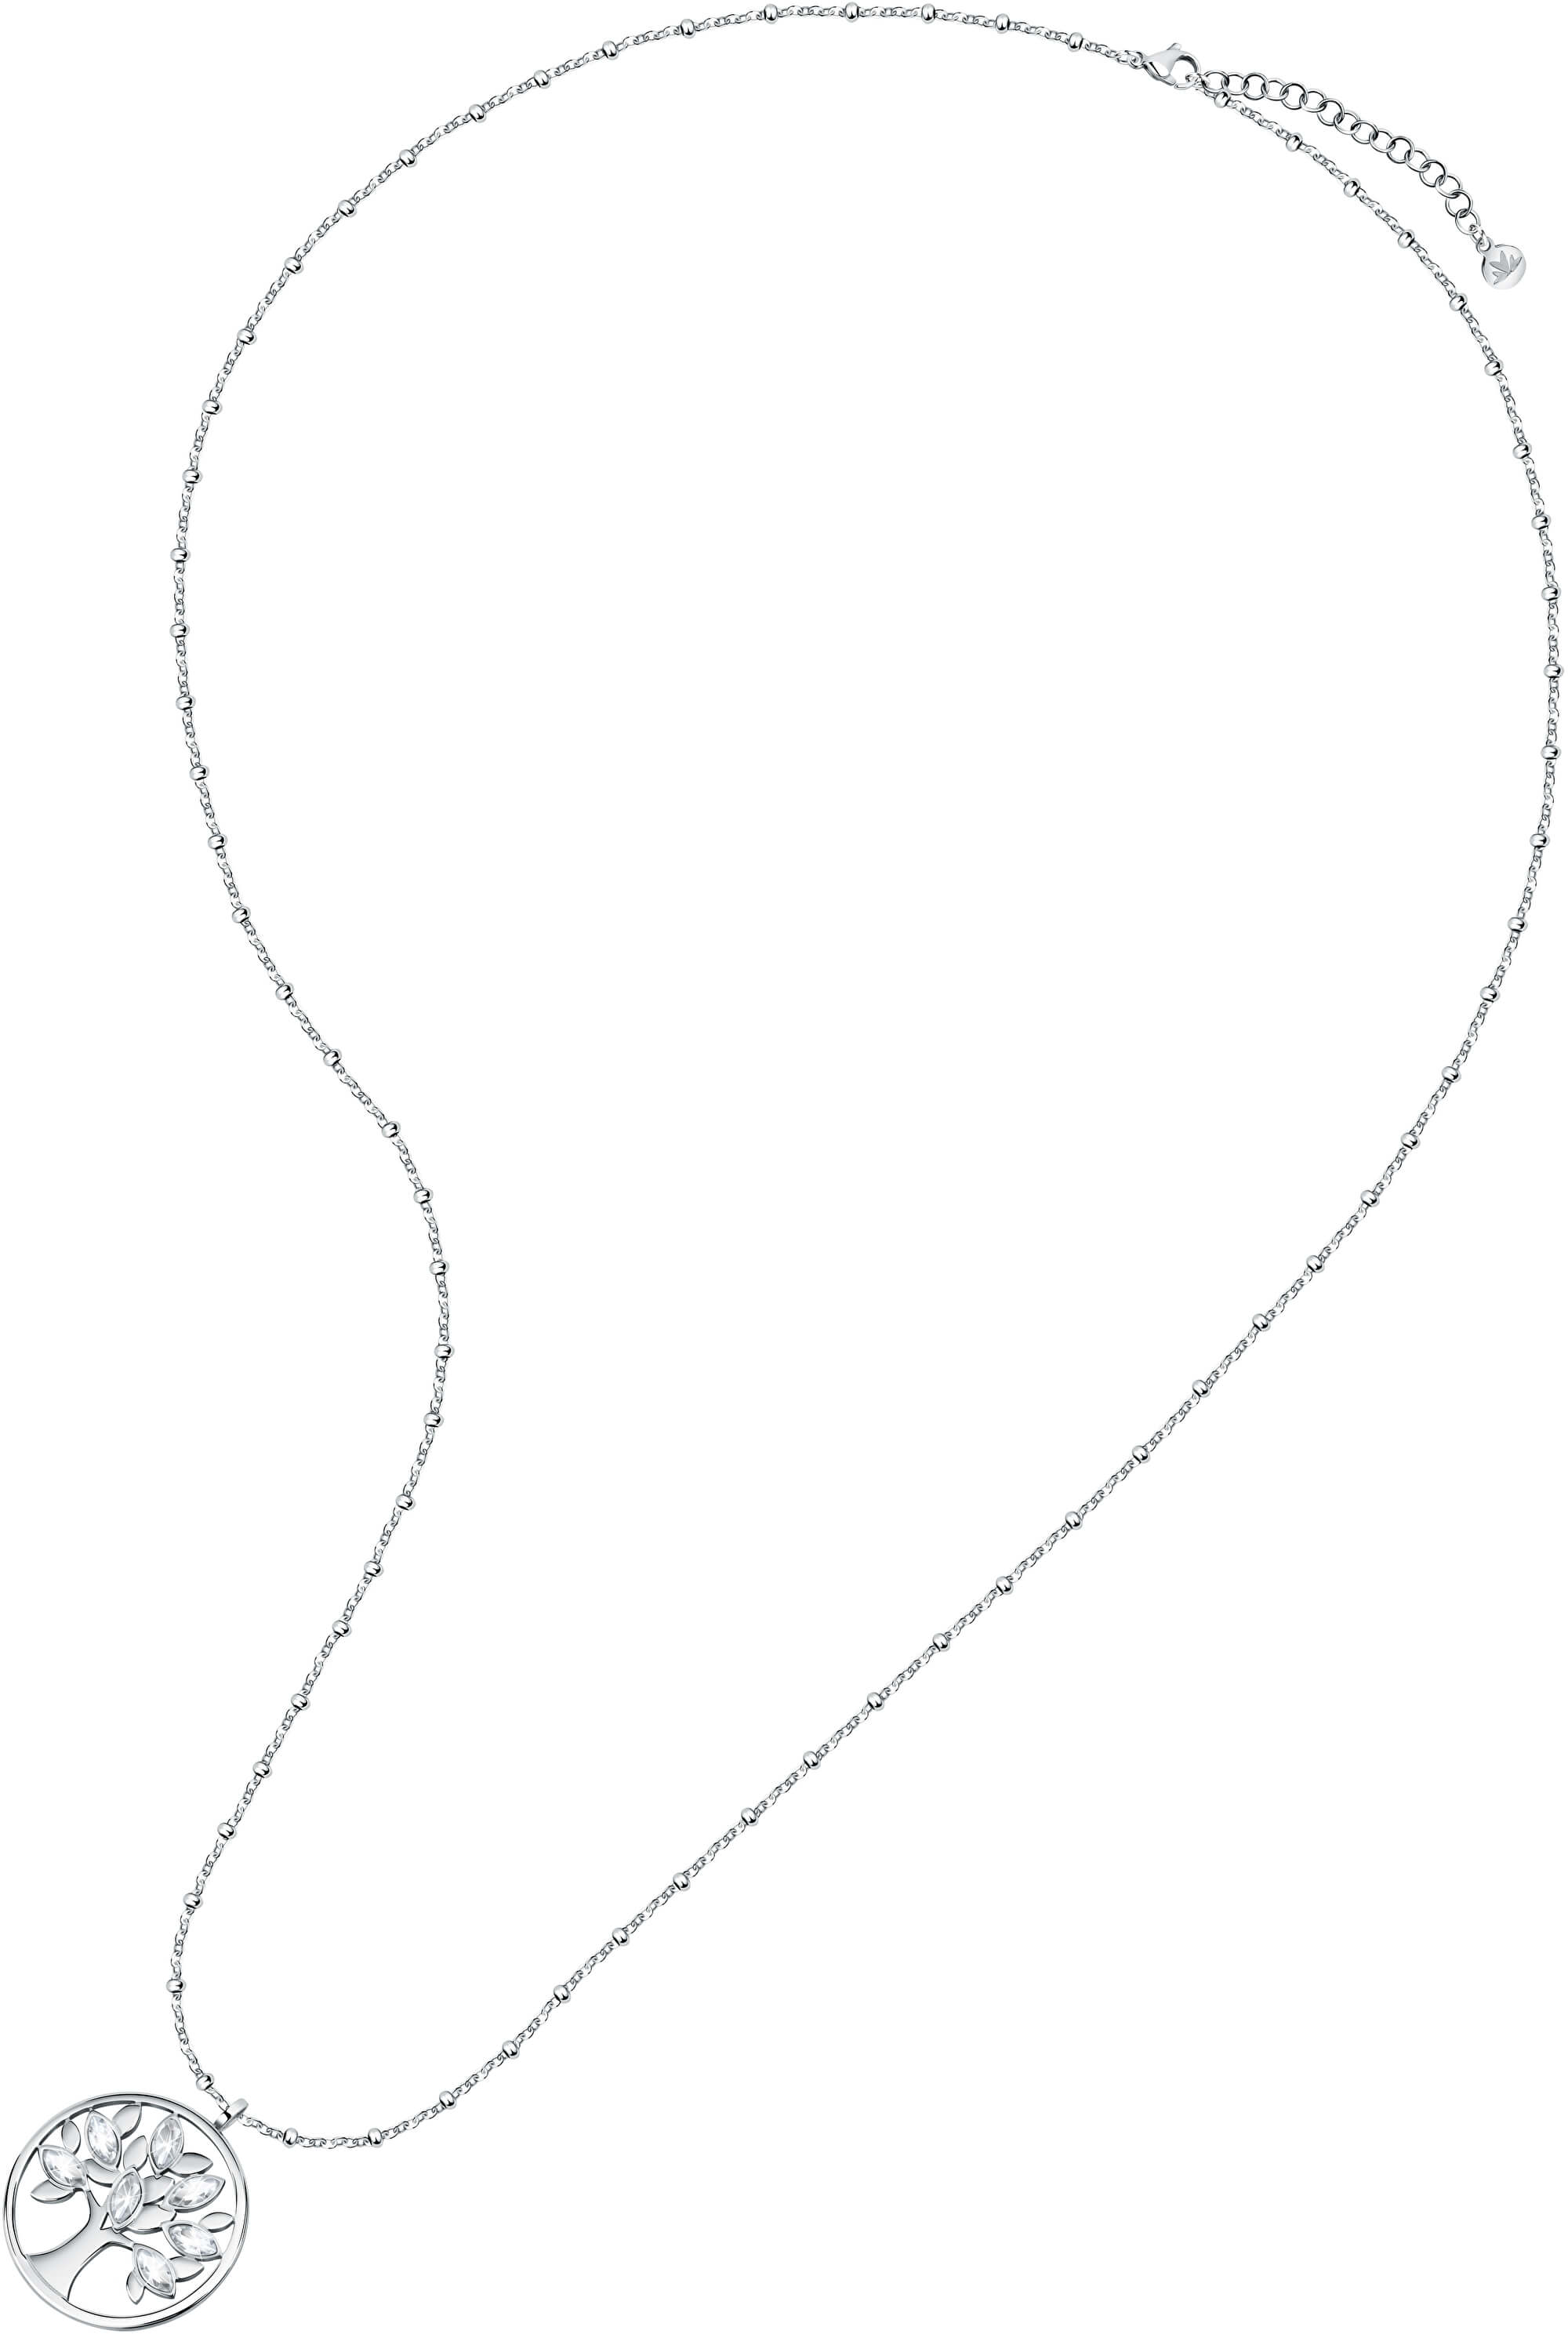 Morellato Půvabný ocelový náhrdelník s přívěskem Strom života Vita SATD16